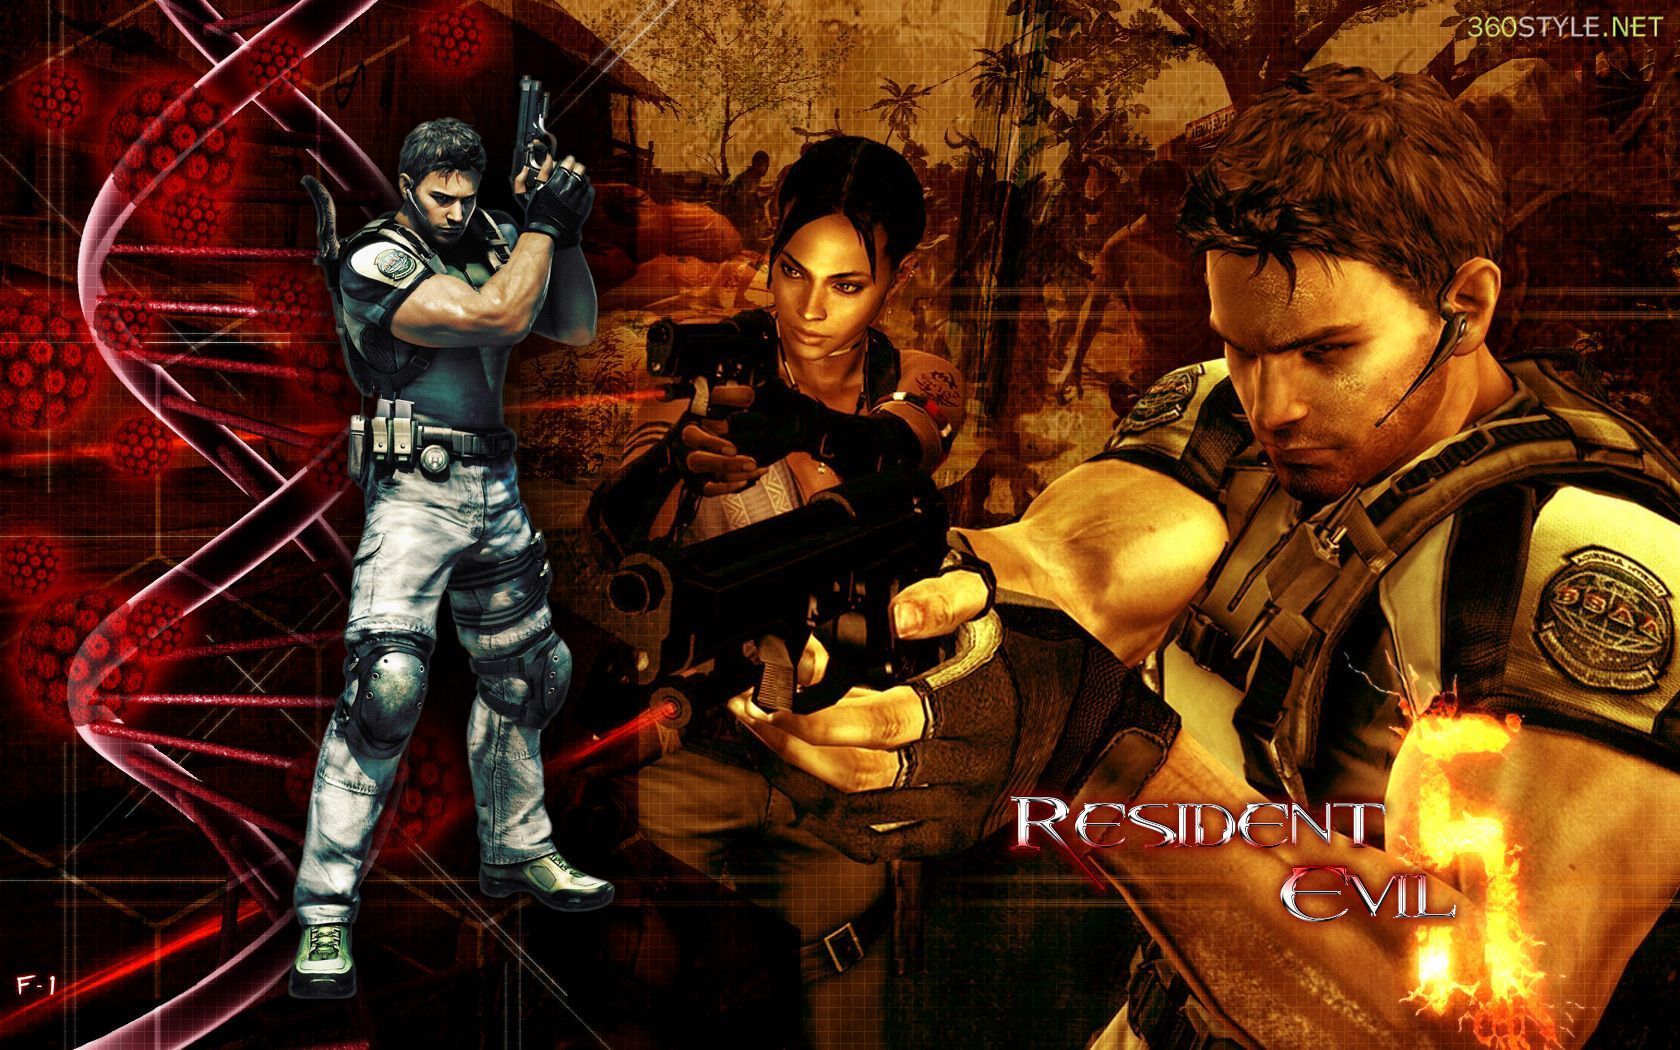 Resident Evil 5 Wallpapers - Resident Evil 5 Message Board for ...